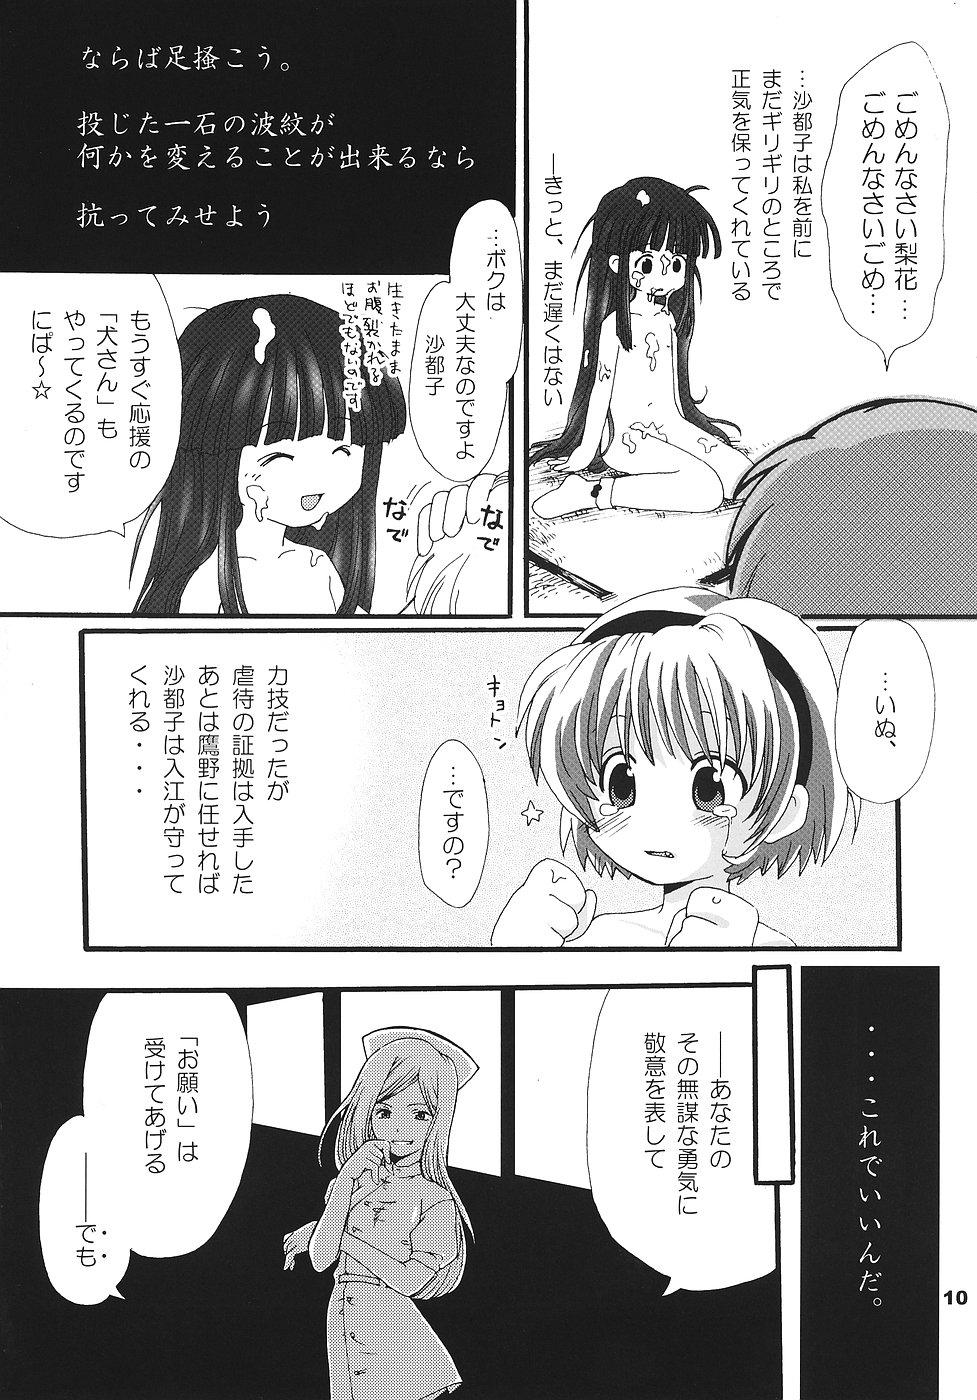 Jeune Mec Higurashi no Koe, Ima wa Tae - Higurashi no naku koro ni Deepthroat - Page 9